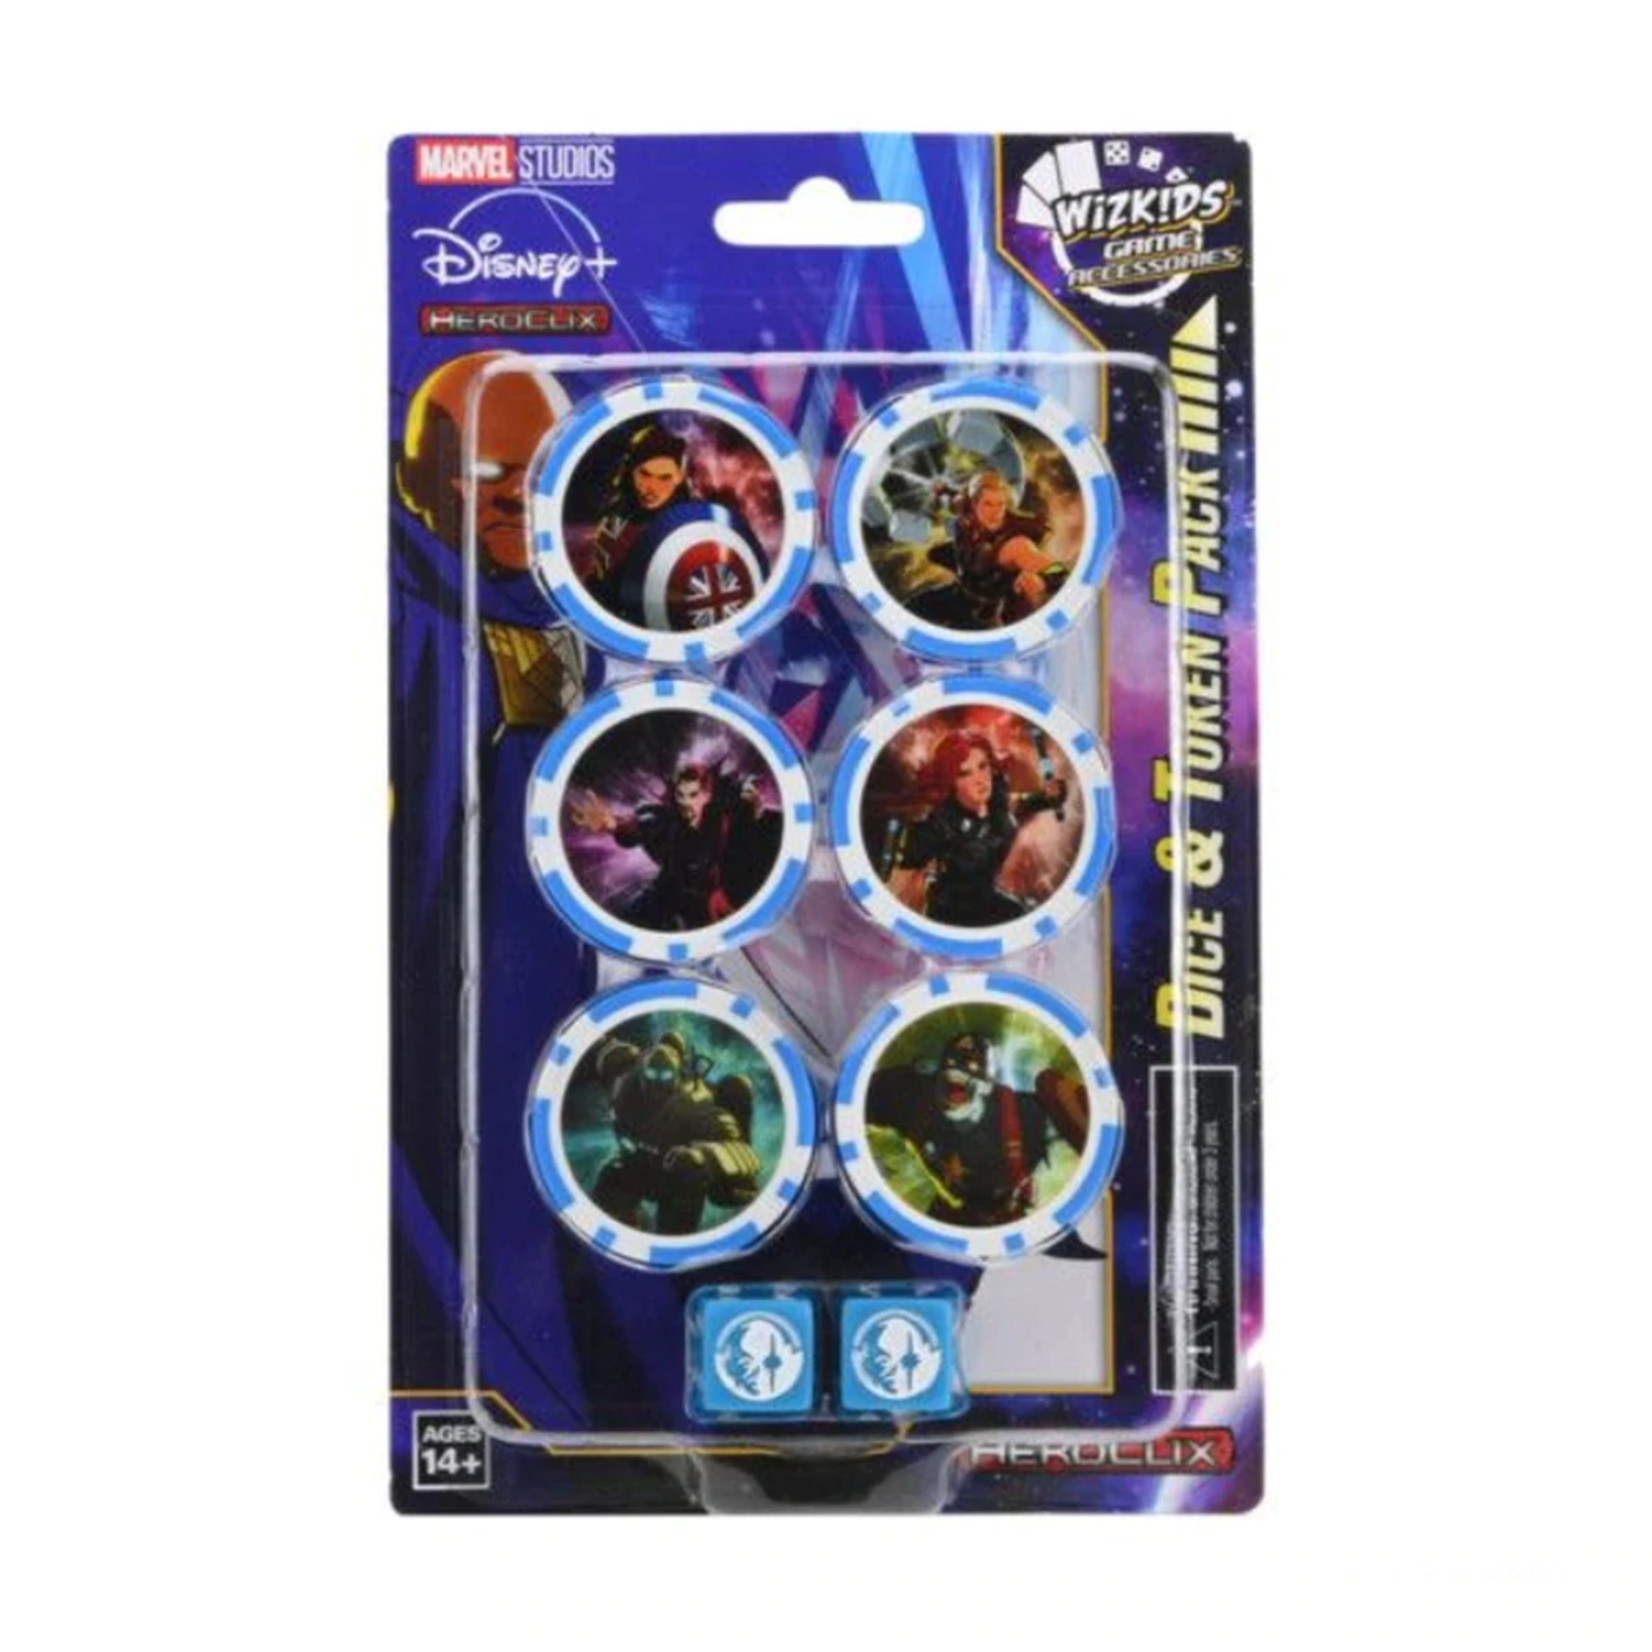 WIZKIDS/NECA Marvel HeroClix Disney Plus Dice Token Pack